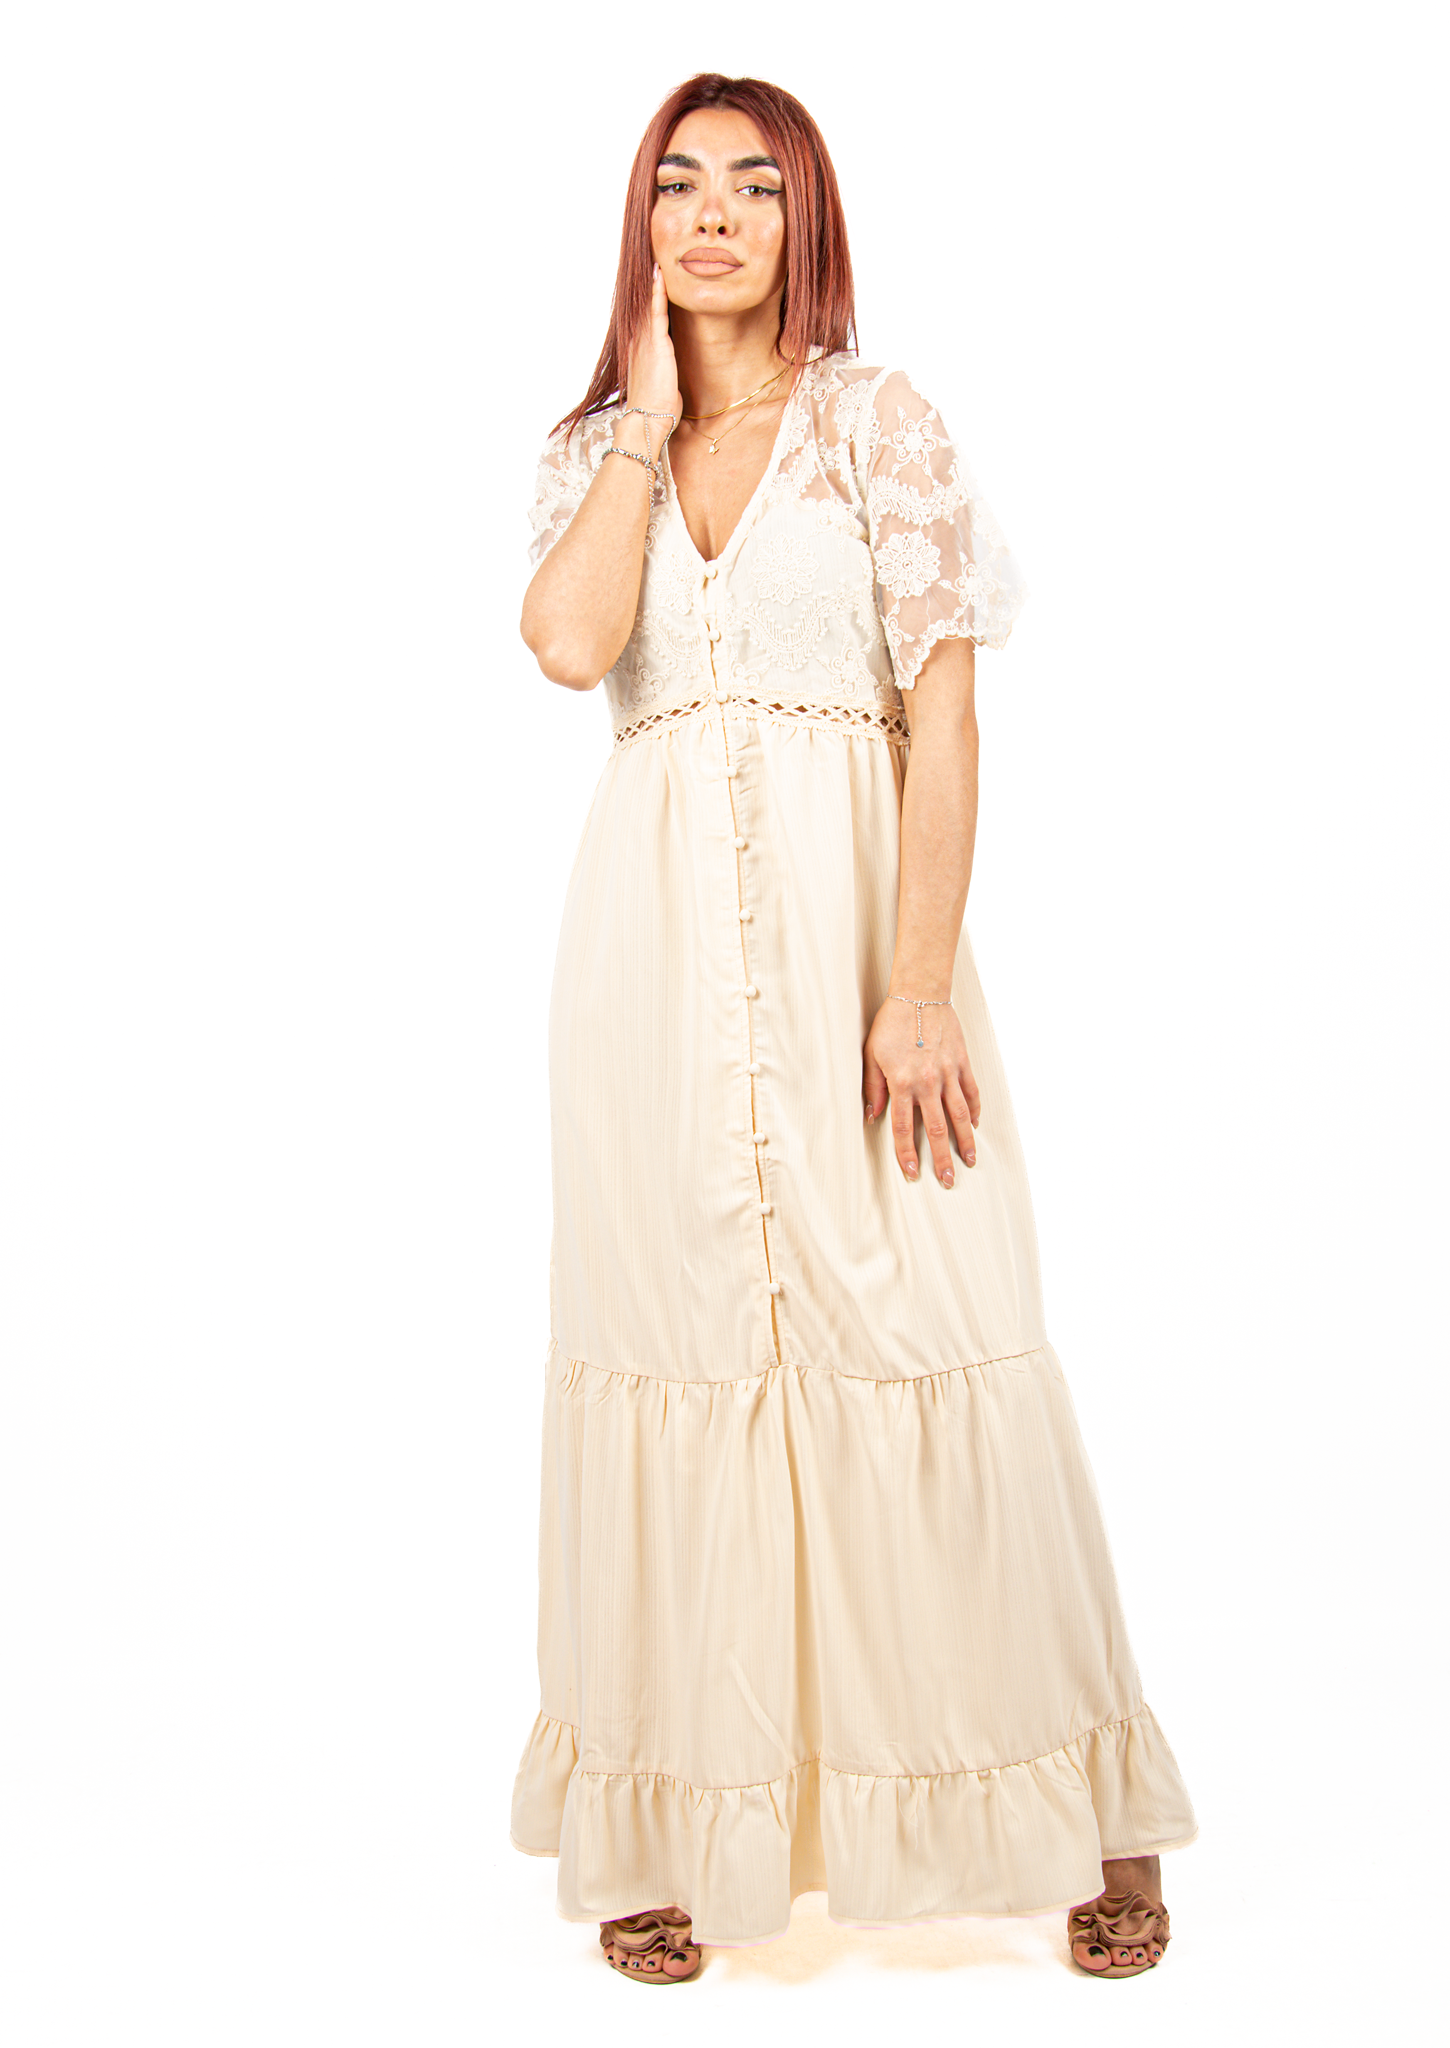 Φόρεμα Ρομαντικό Σεμιζιέ με Δαντέλα Μπεζ – EllenBoutique